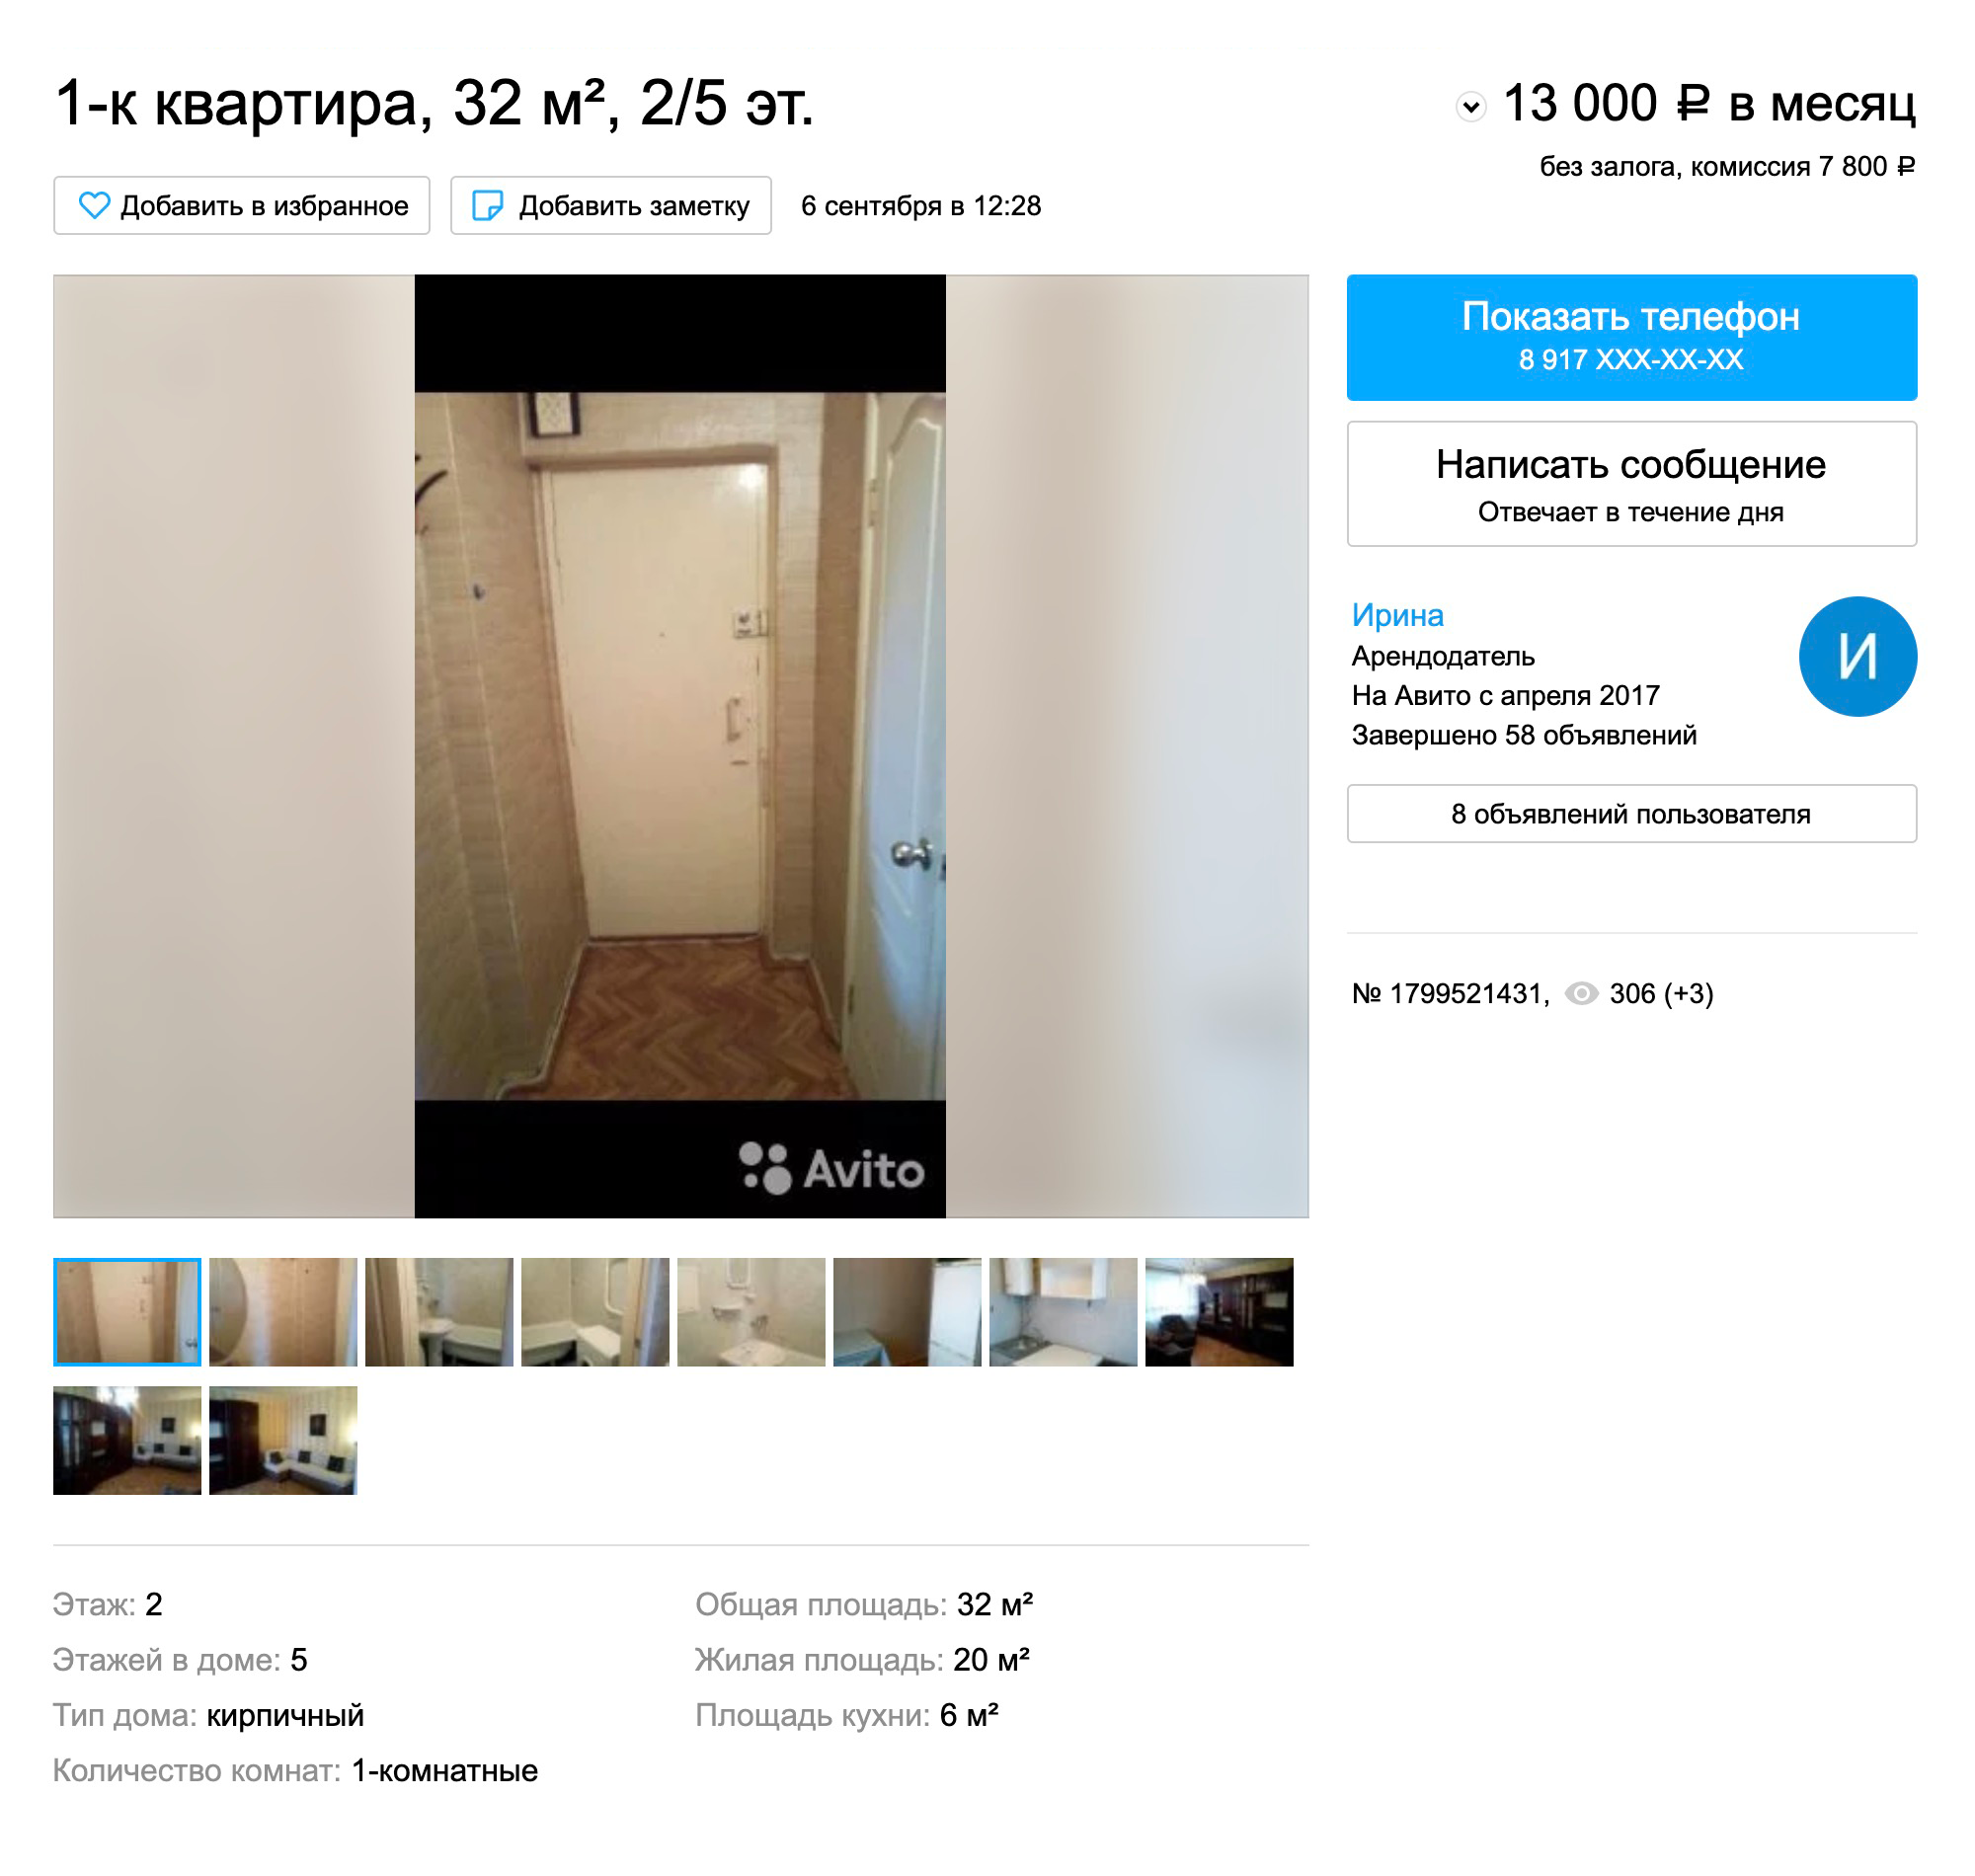 Соседи сдают квартиру рядом с автовокзалом за 13 000 рублей